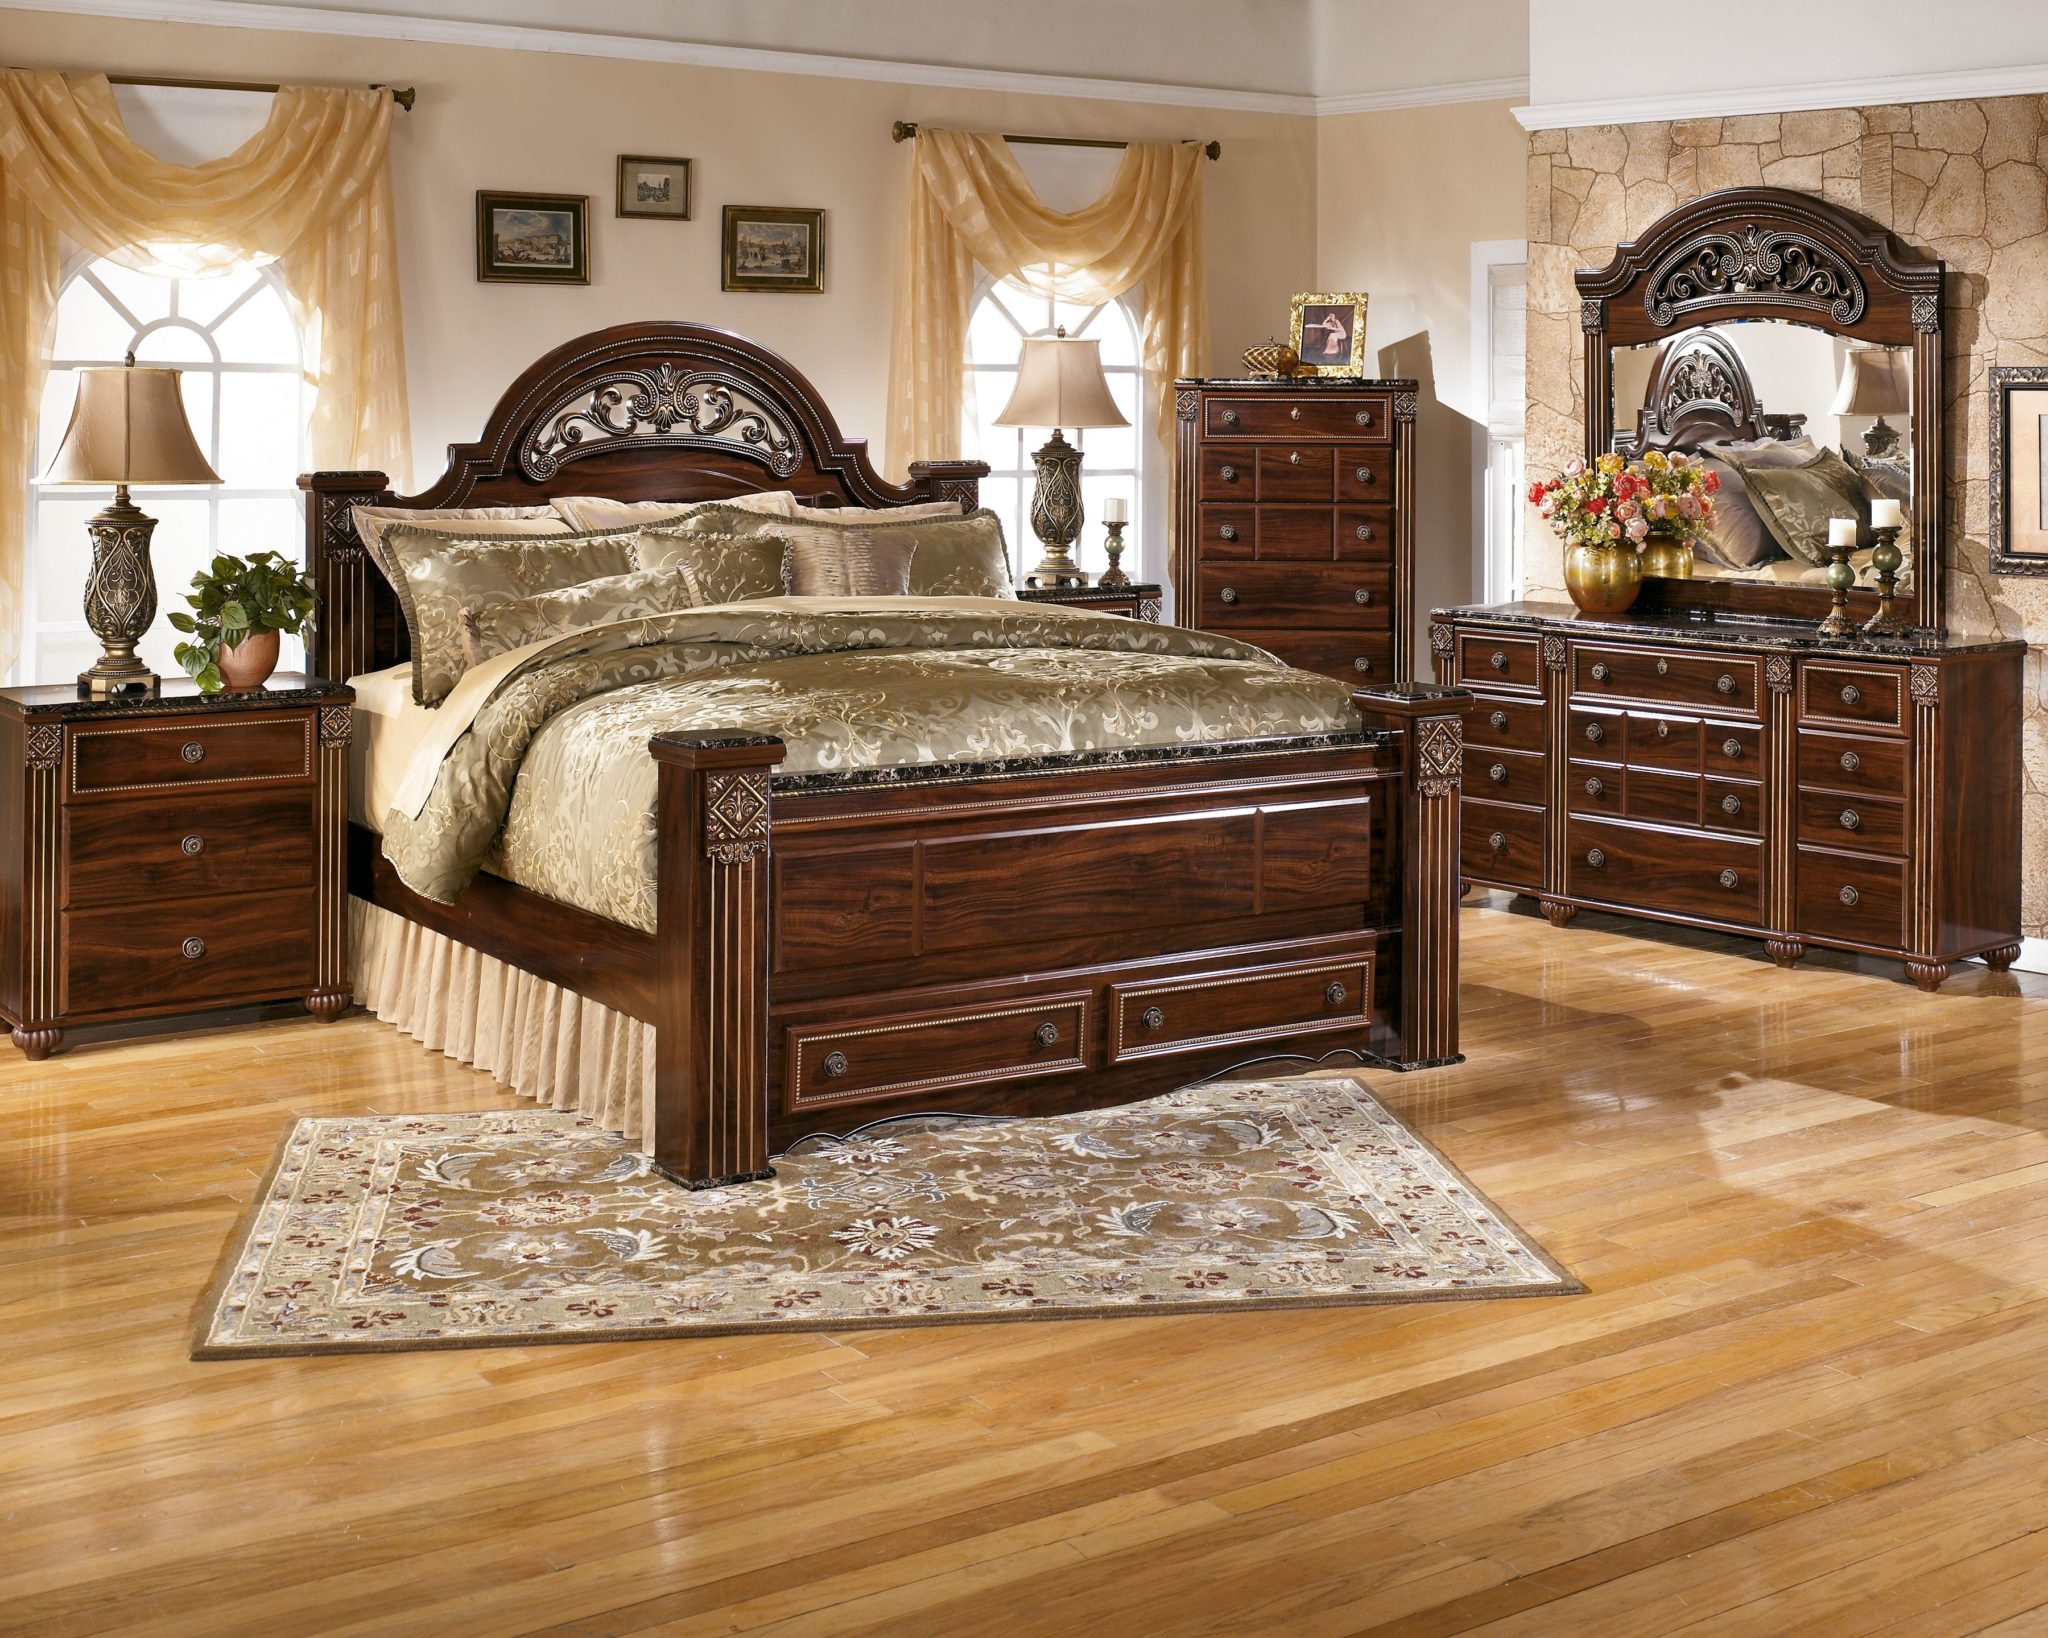 bedroom furniture for sale ebay